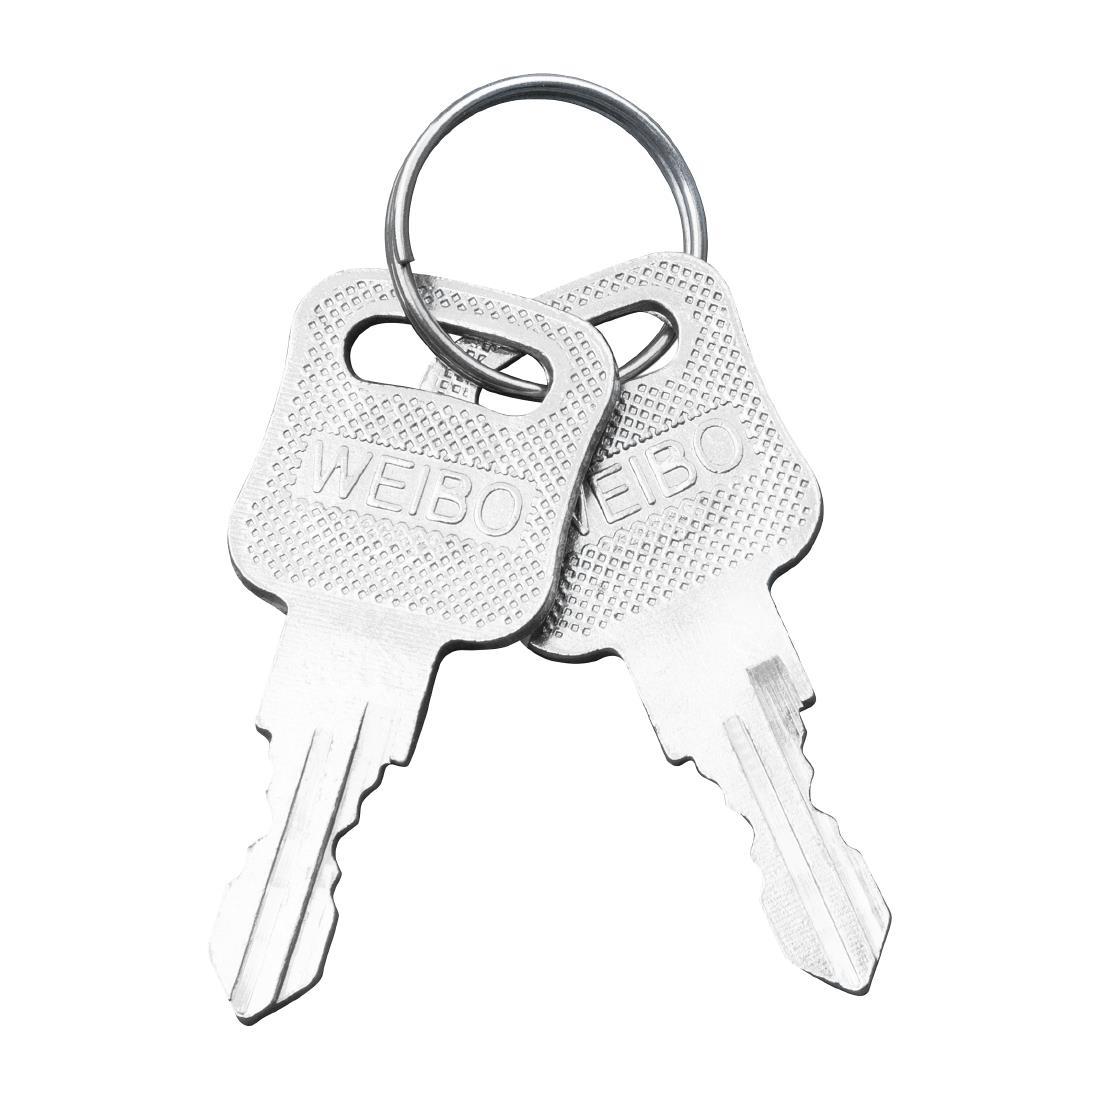 Jantex Dispensers Spare Keys (Pack of 2) - AF379  - 1